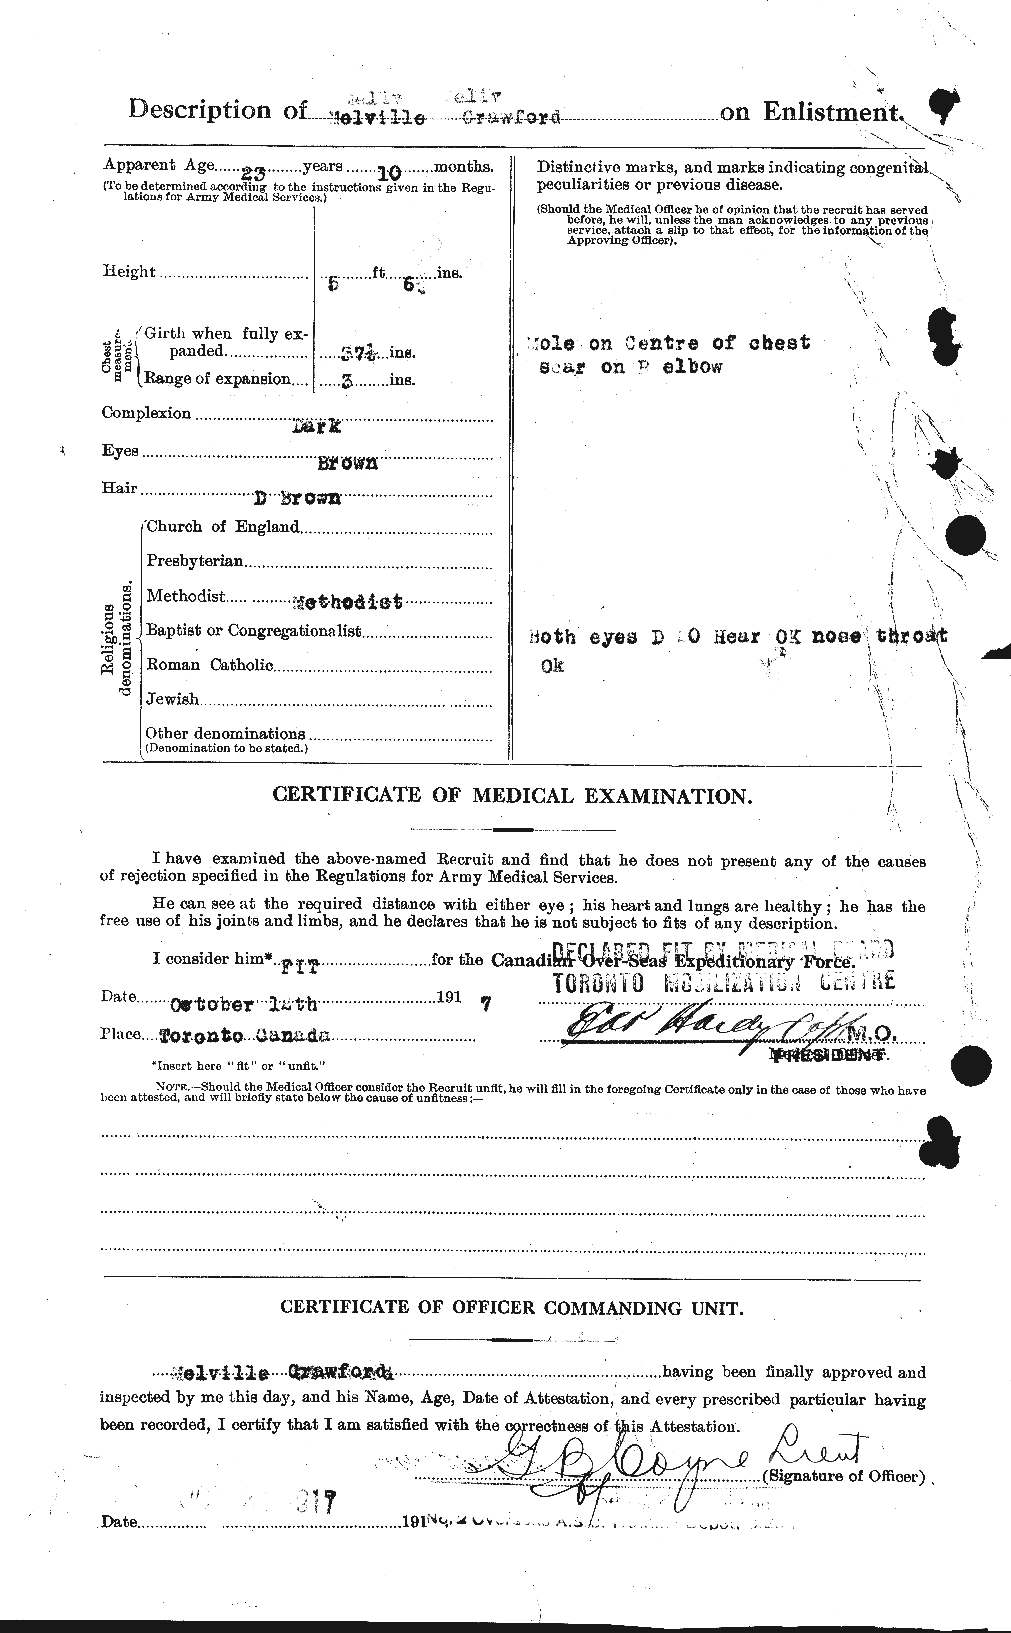 Dossiers du Personnel de la Première Guerre mondiale - CEC 061779b